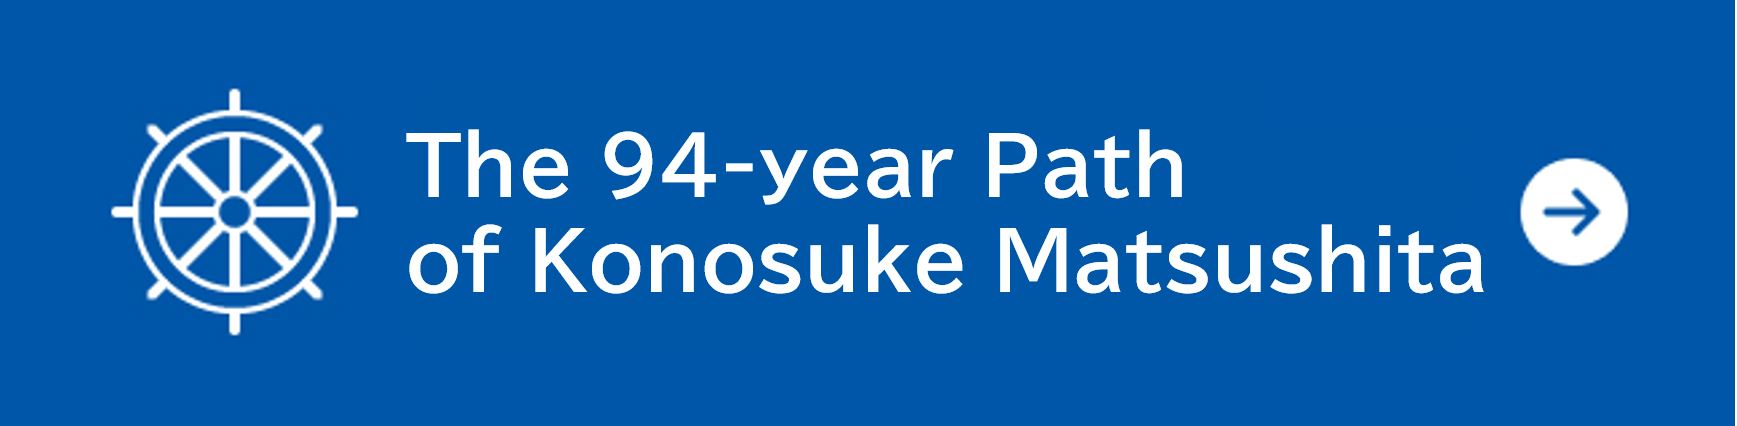 The 94-year Path of Konosuke Matsushita